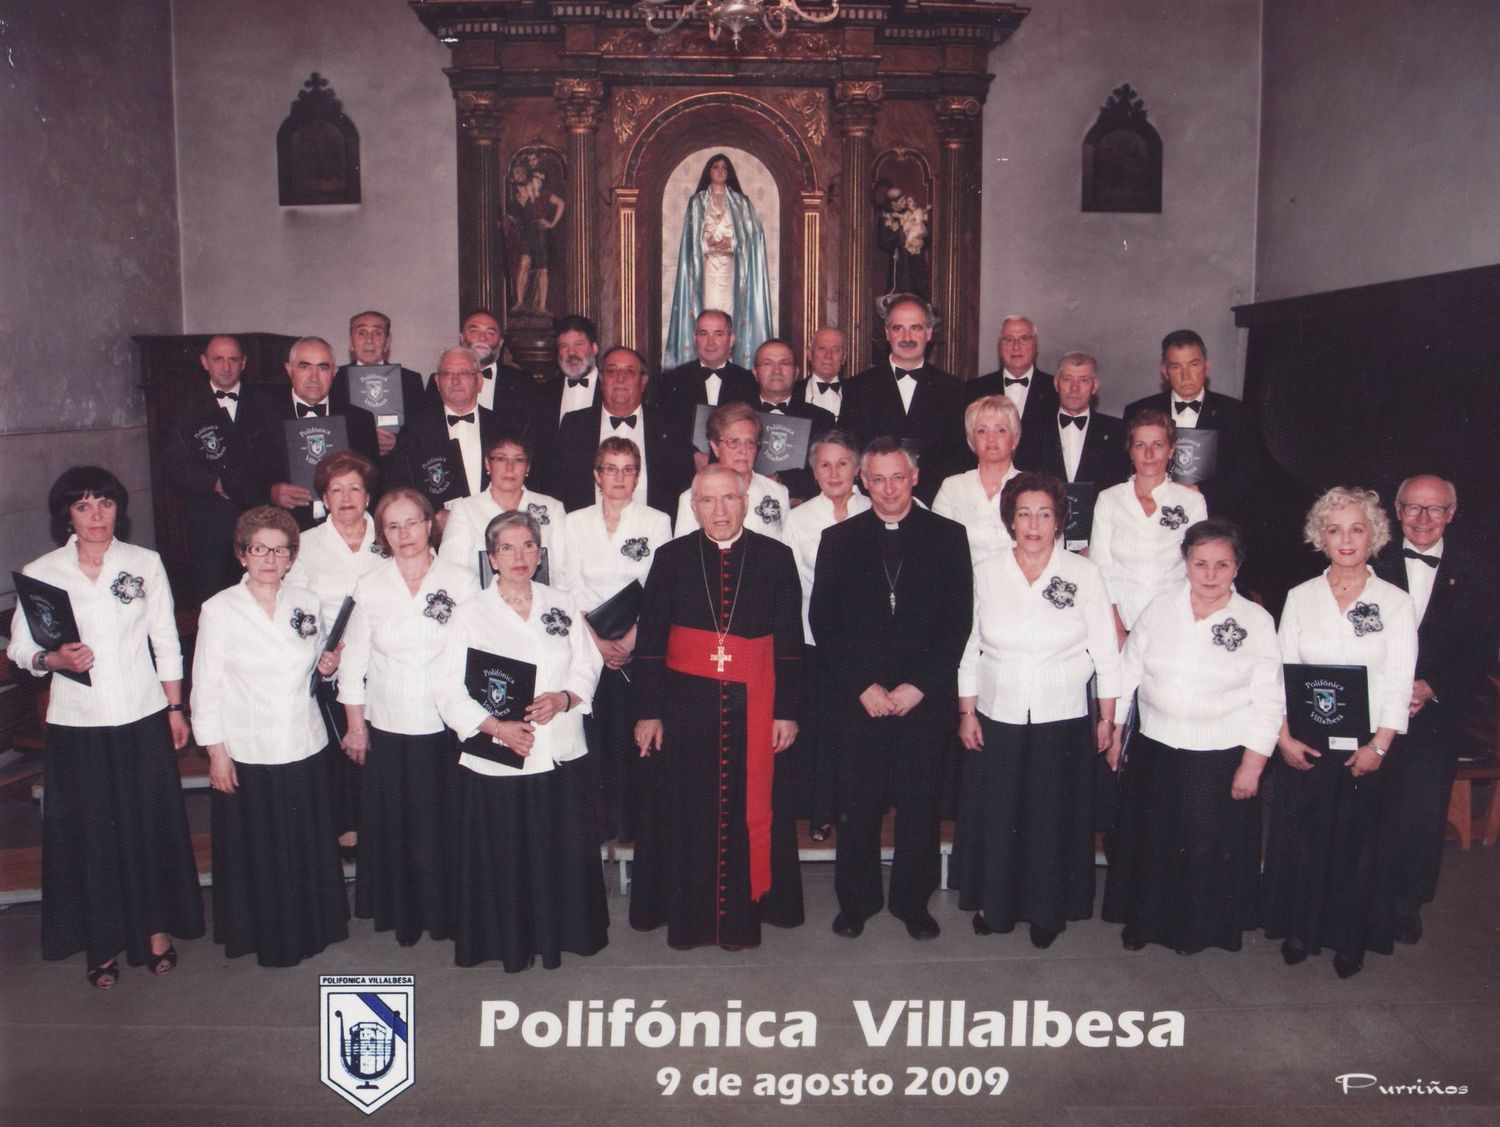 2009: A Polifónica de Vilalba con Don Uxío, Director; e os vilalbeses Monseñor Alfonso Carrasco Rouco, Bispo de Lugo, e o Cardenal Antonio María Rouco Varela.